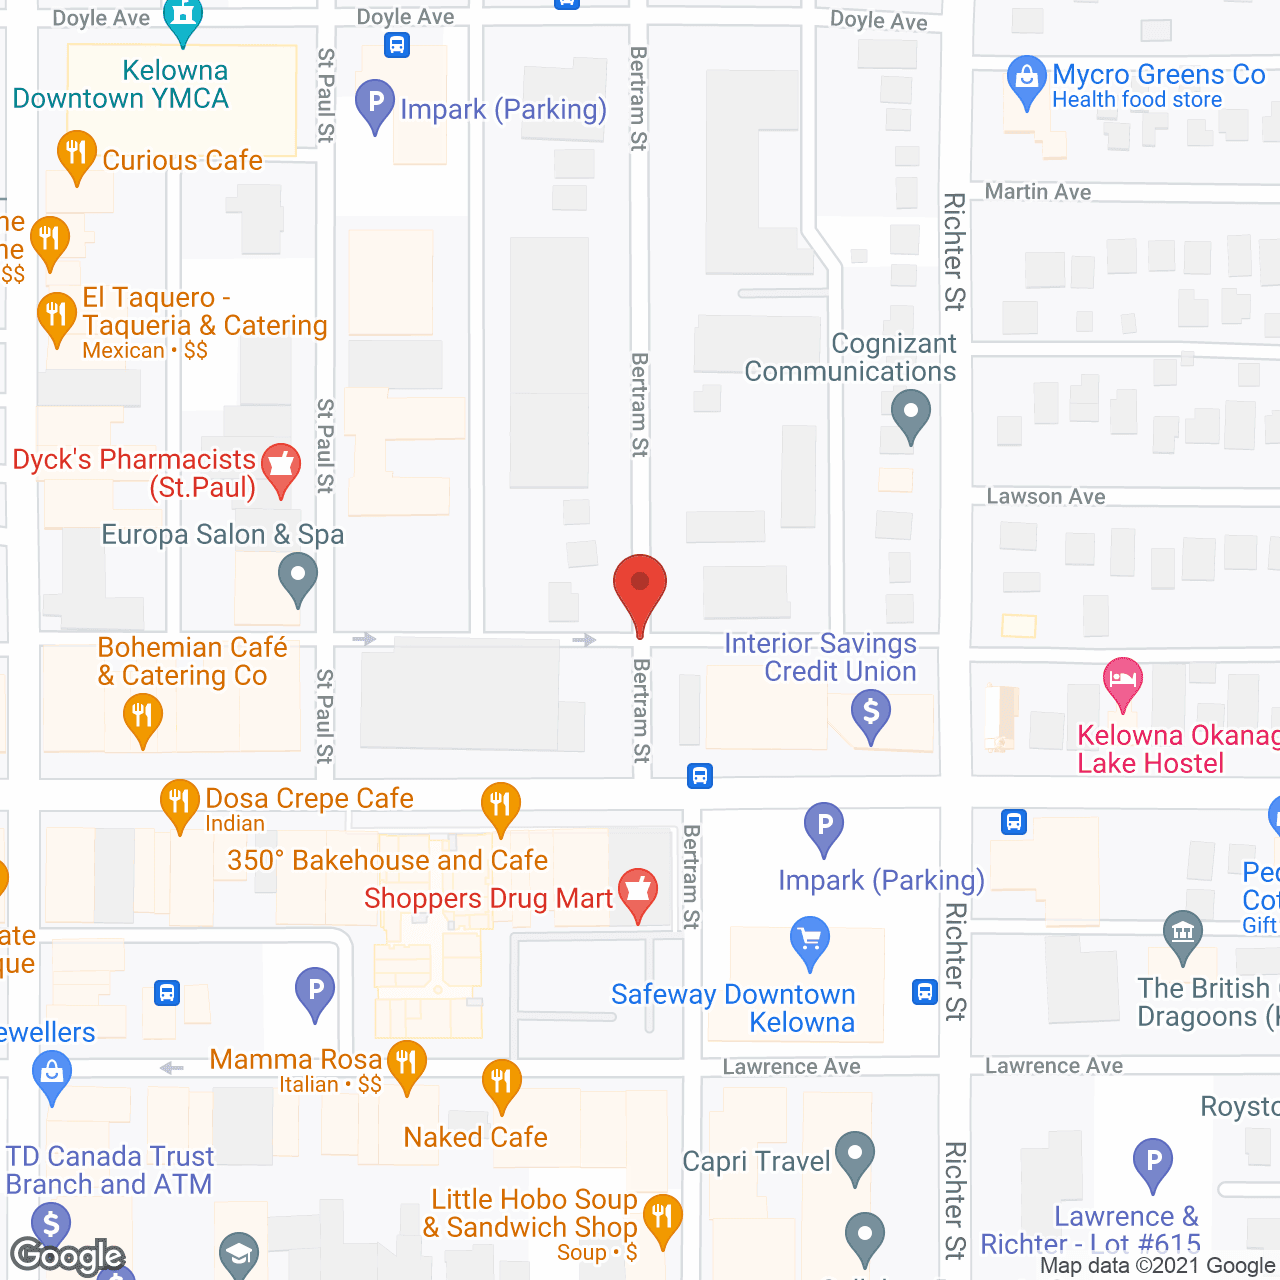 Evangel Senior Apartments in google map